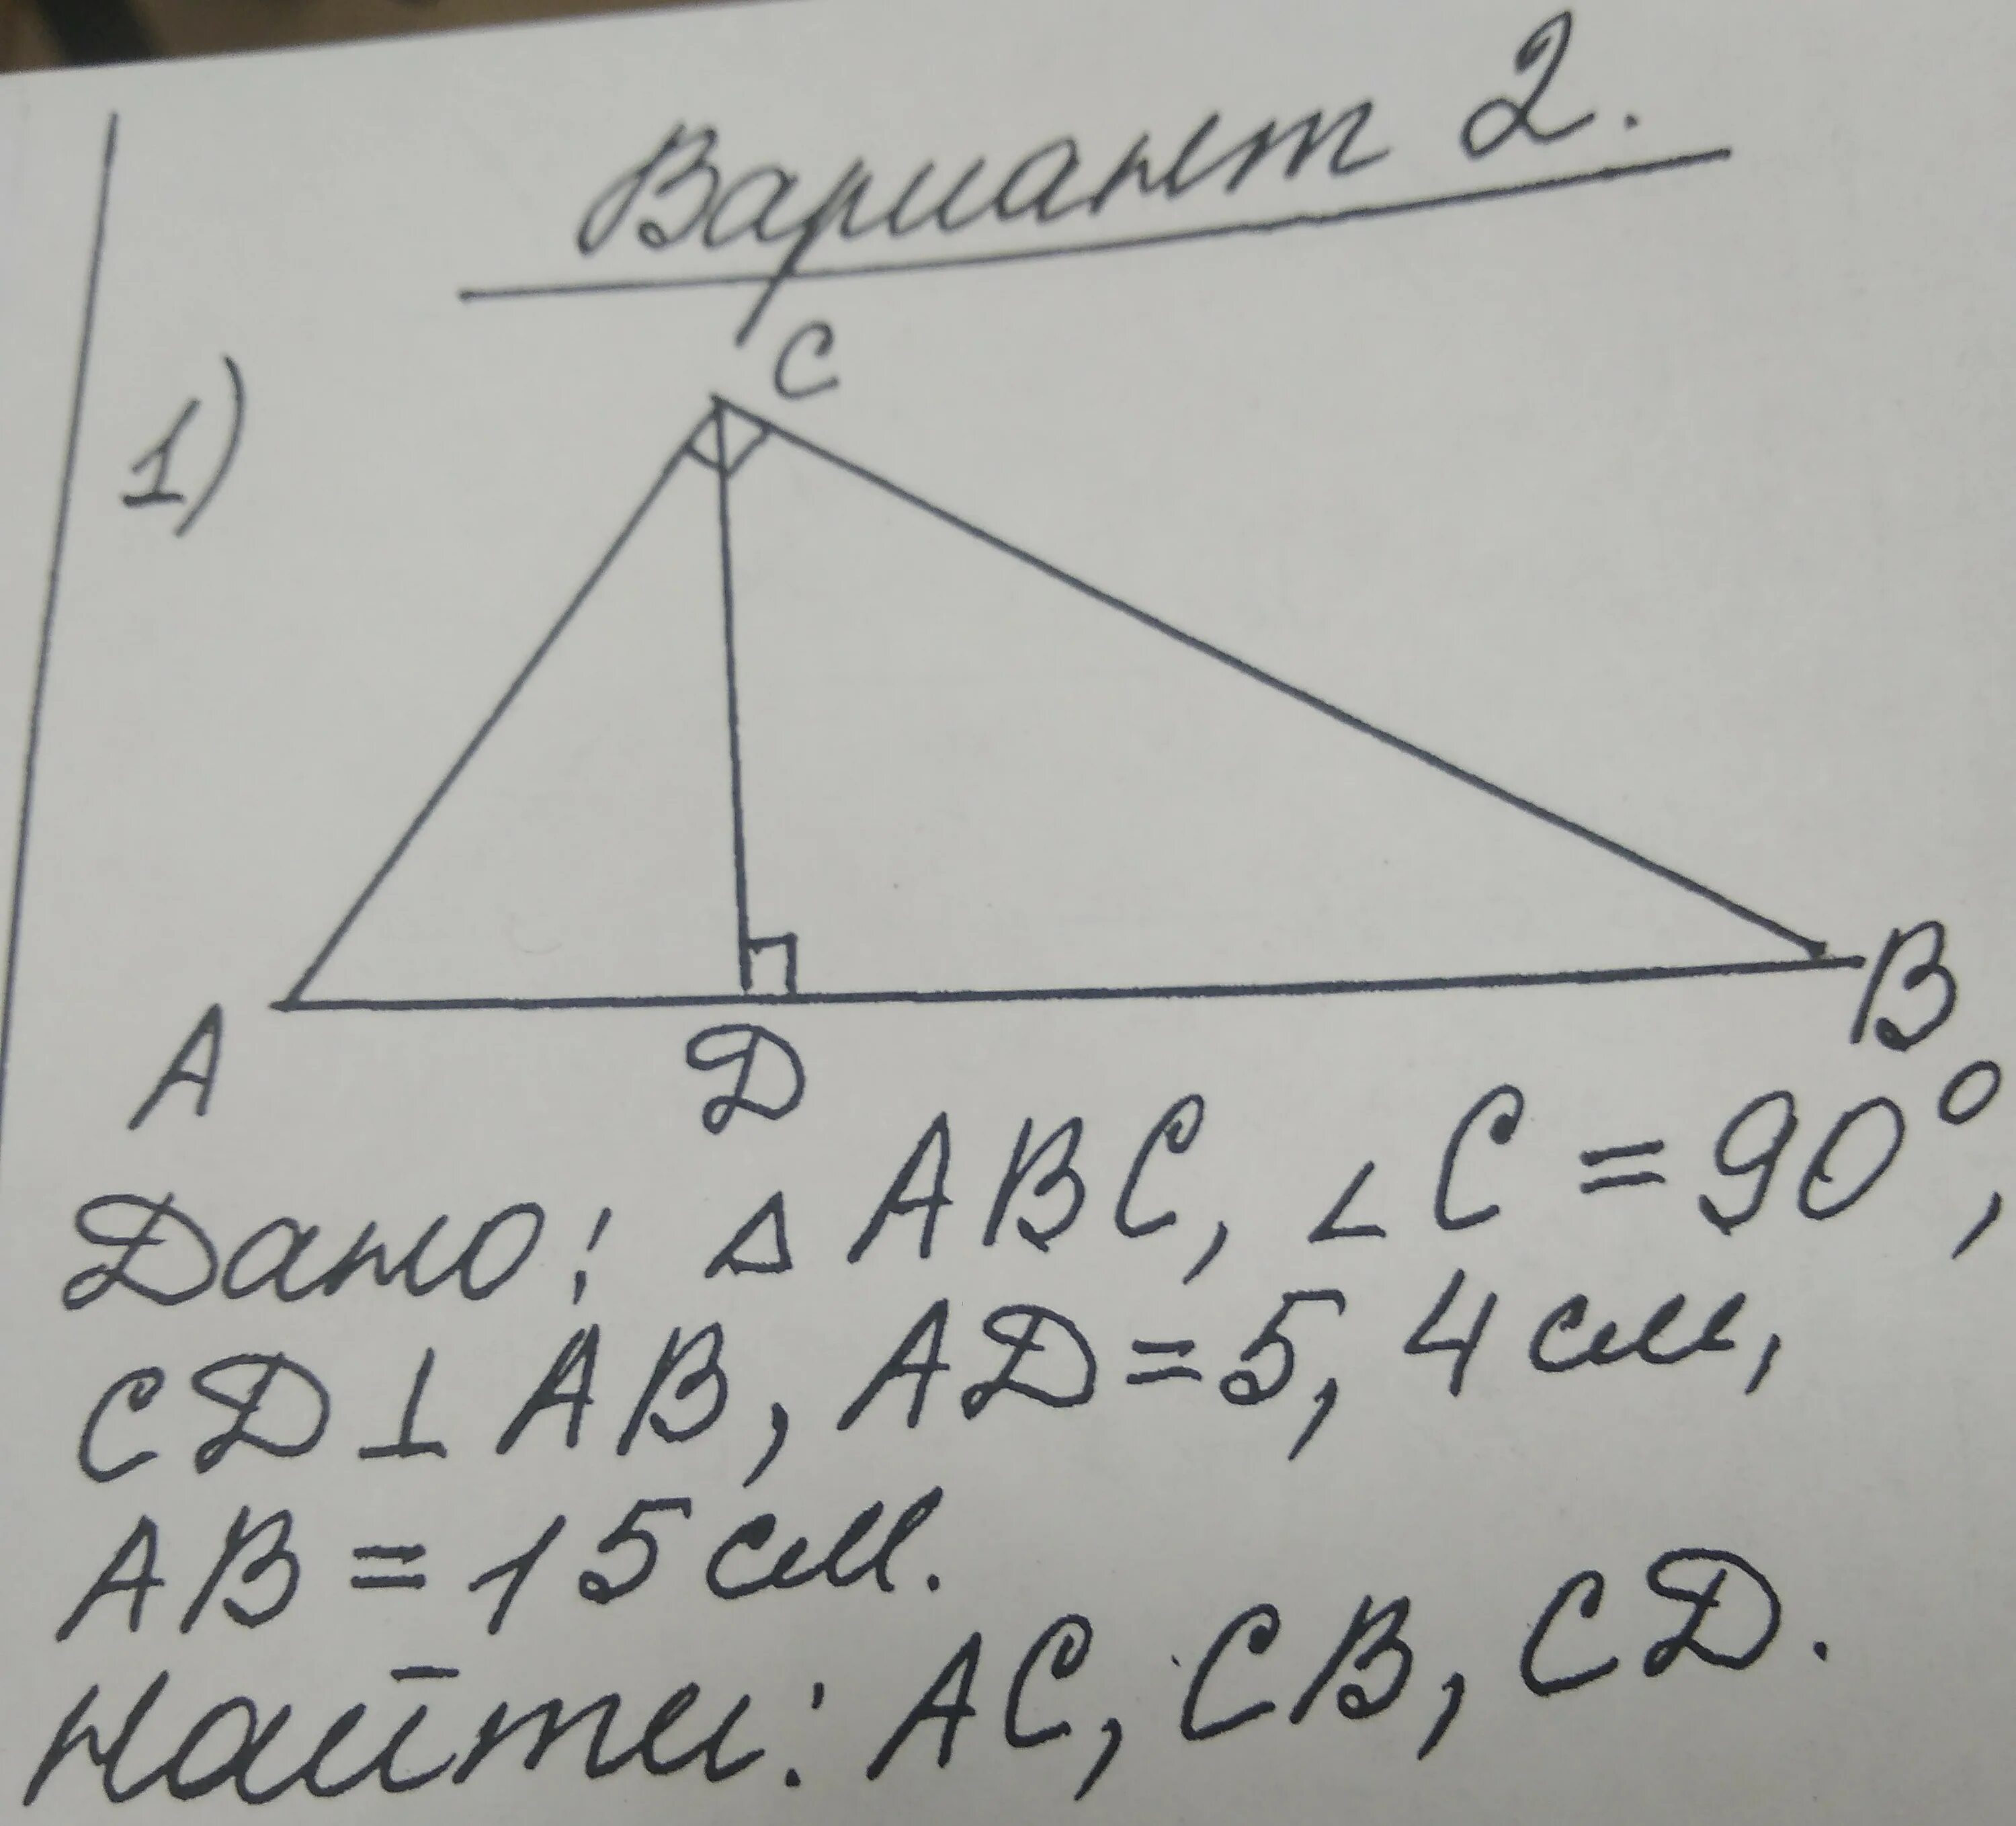 Abc 2 ab cd. Треугольник АВС 90 градусов. Дано треугольник ABC. Углы треугольника ABC. Дано треугольник АВС угол с 90 градусов высота CD.